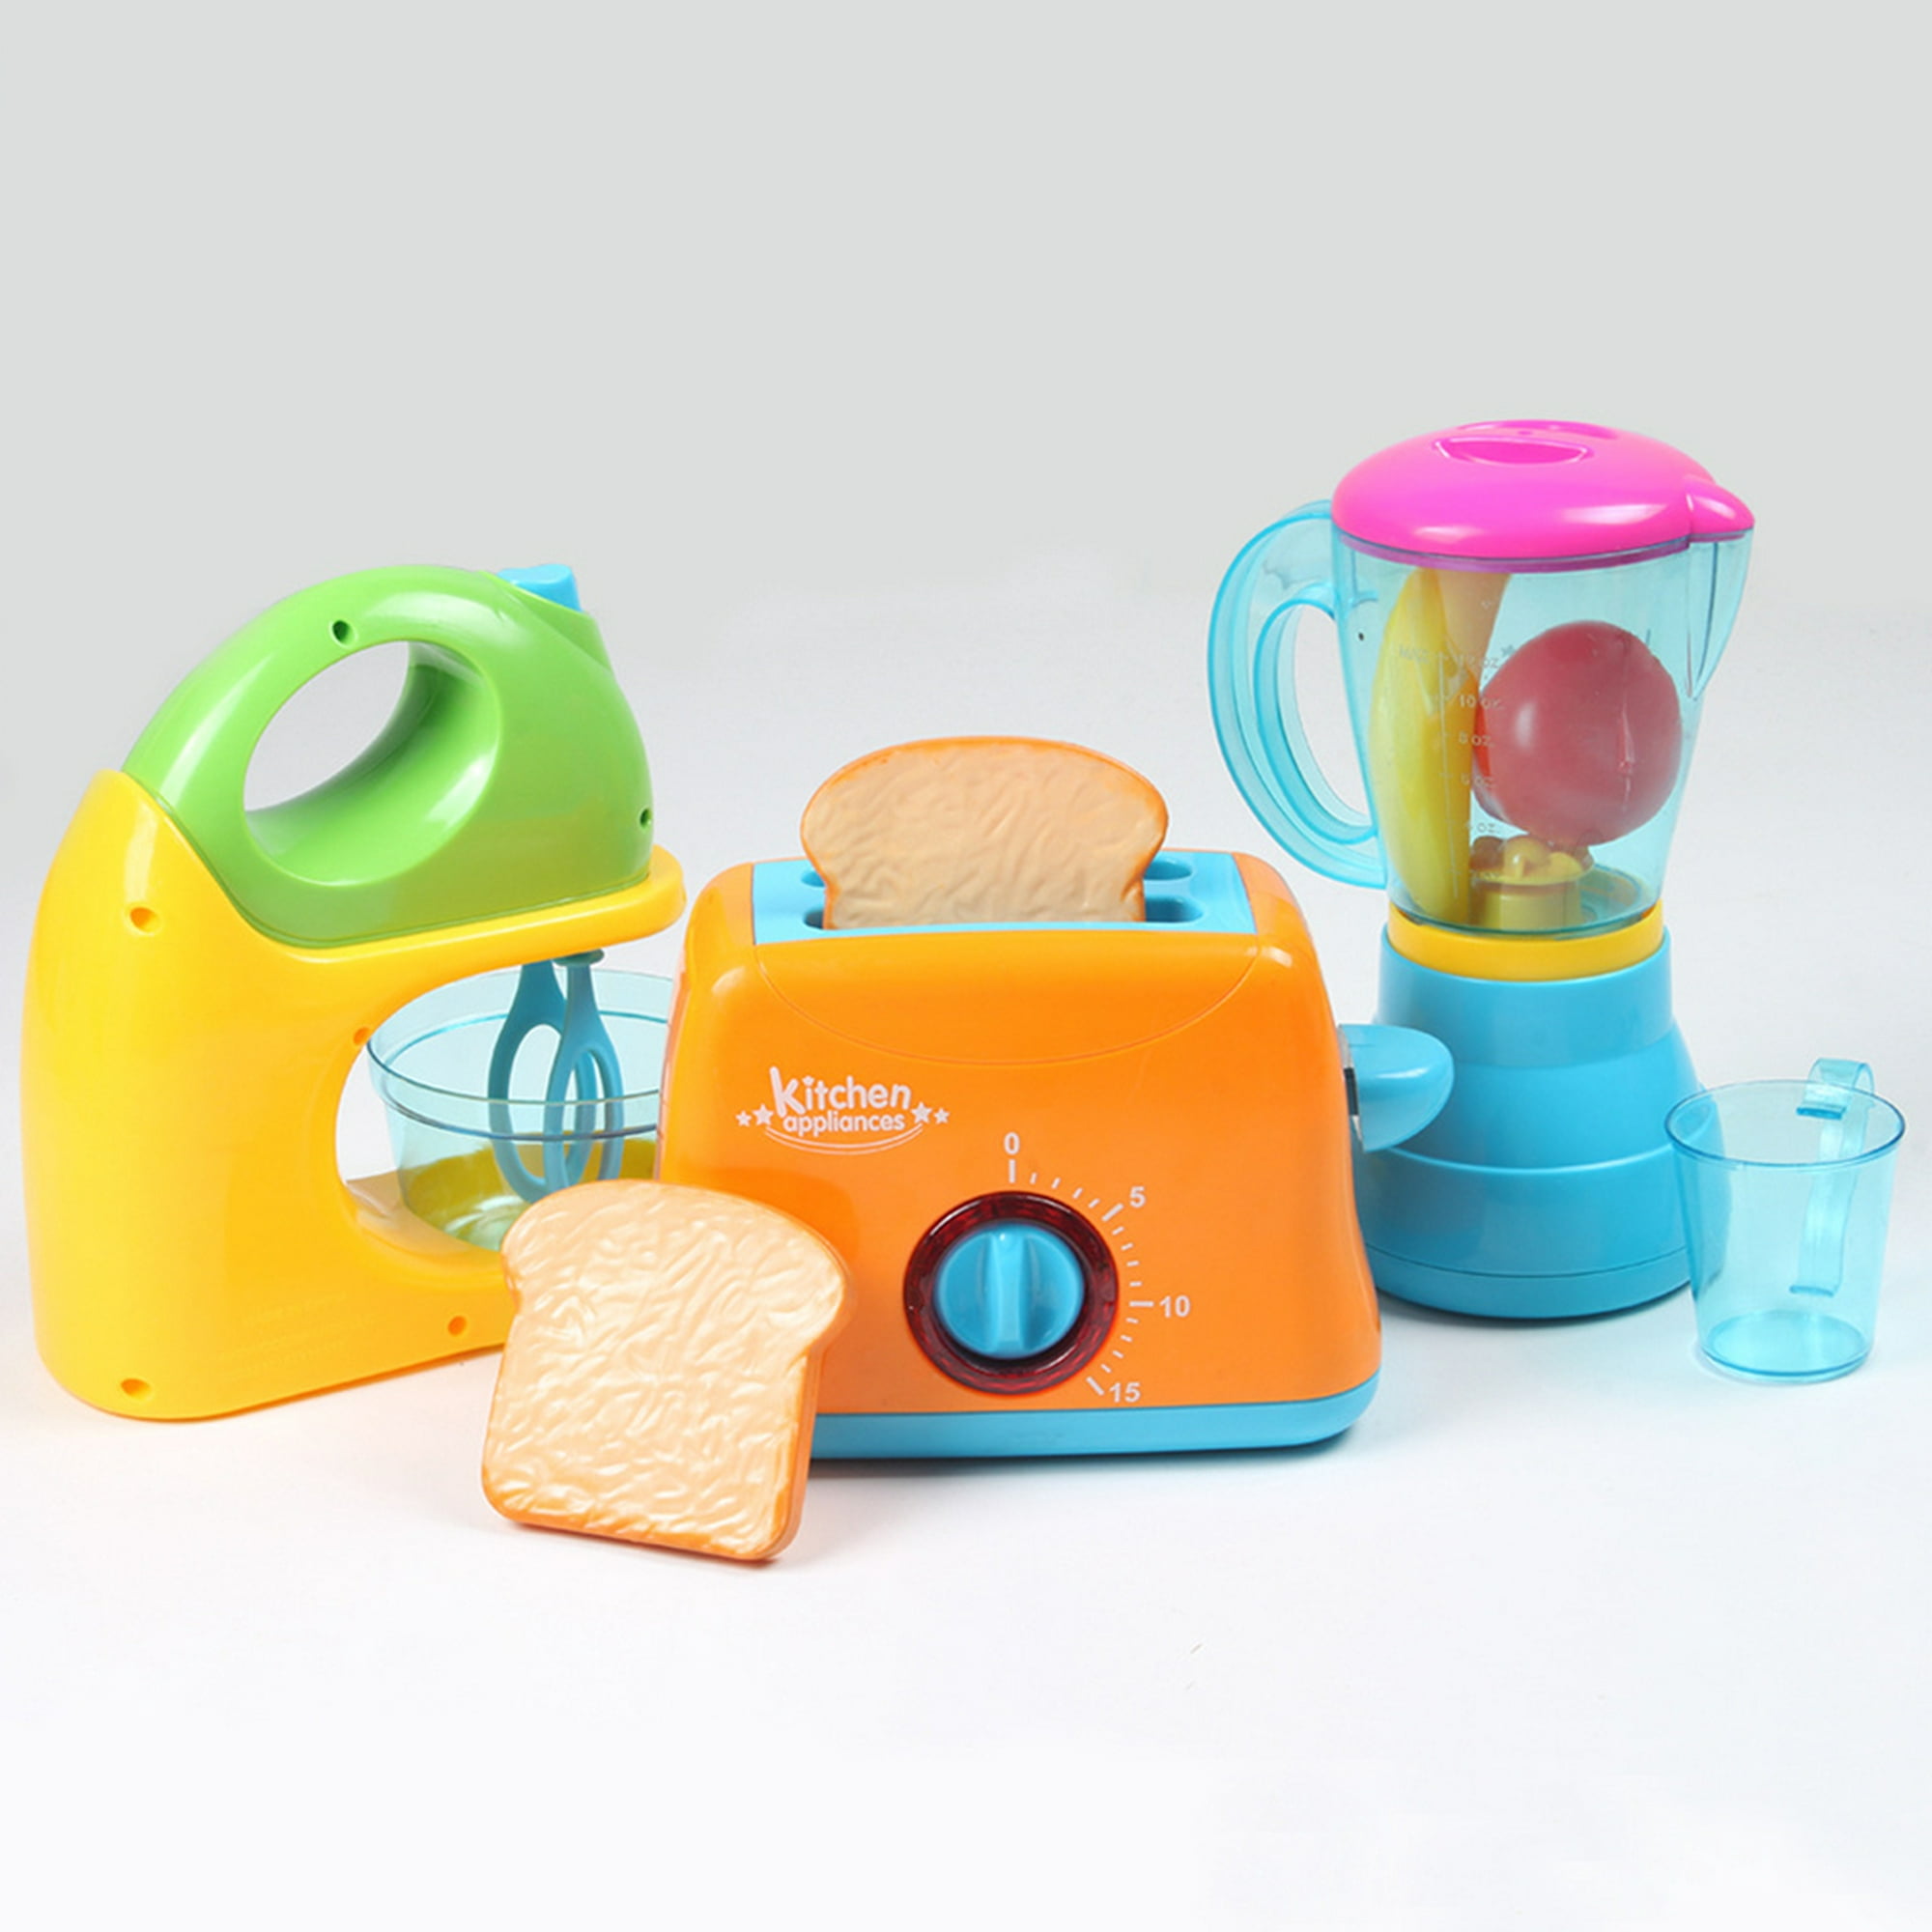 Juguete para electrodomésticos de cocina, juguete de cocina con mezclador,  licuadora, tostadora, alimentos y accesorios, regalos de aprendizaje para